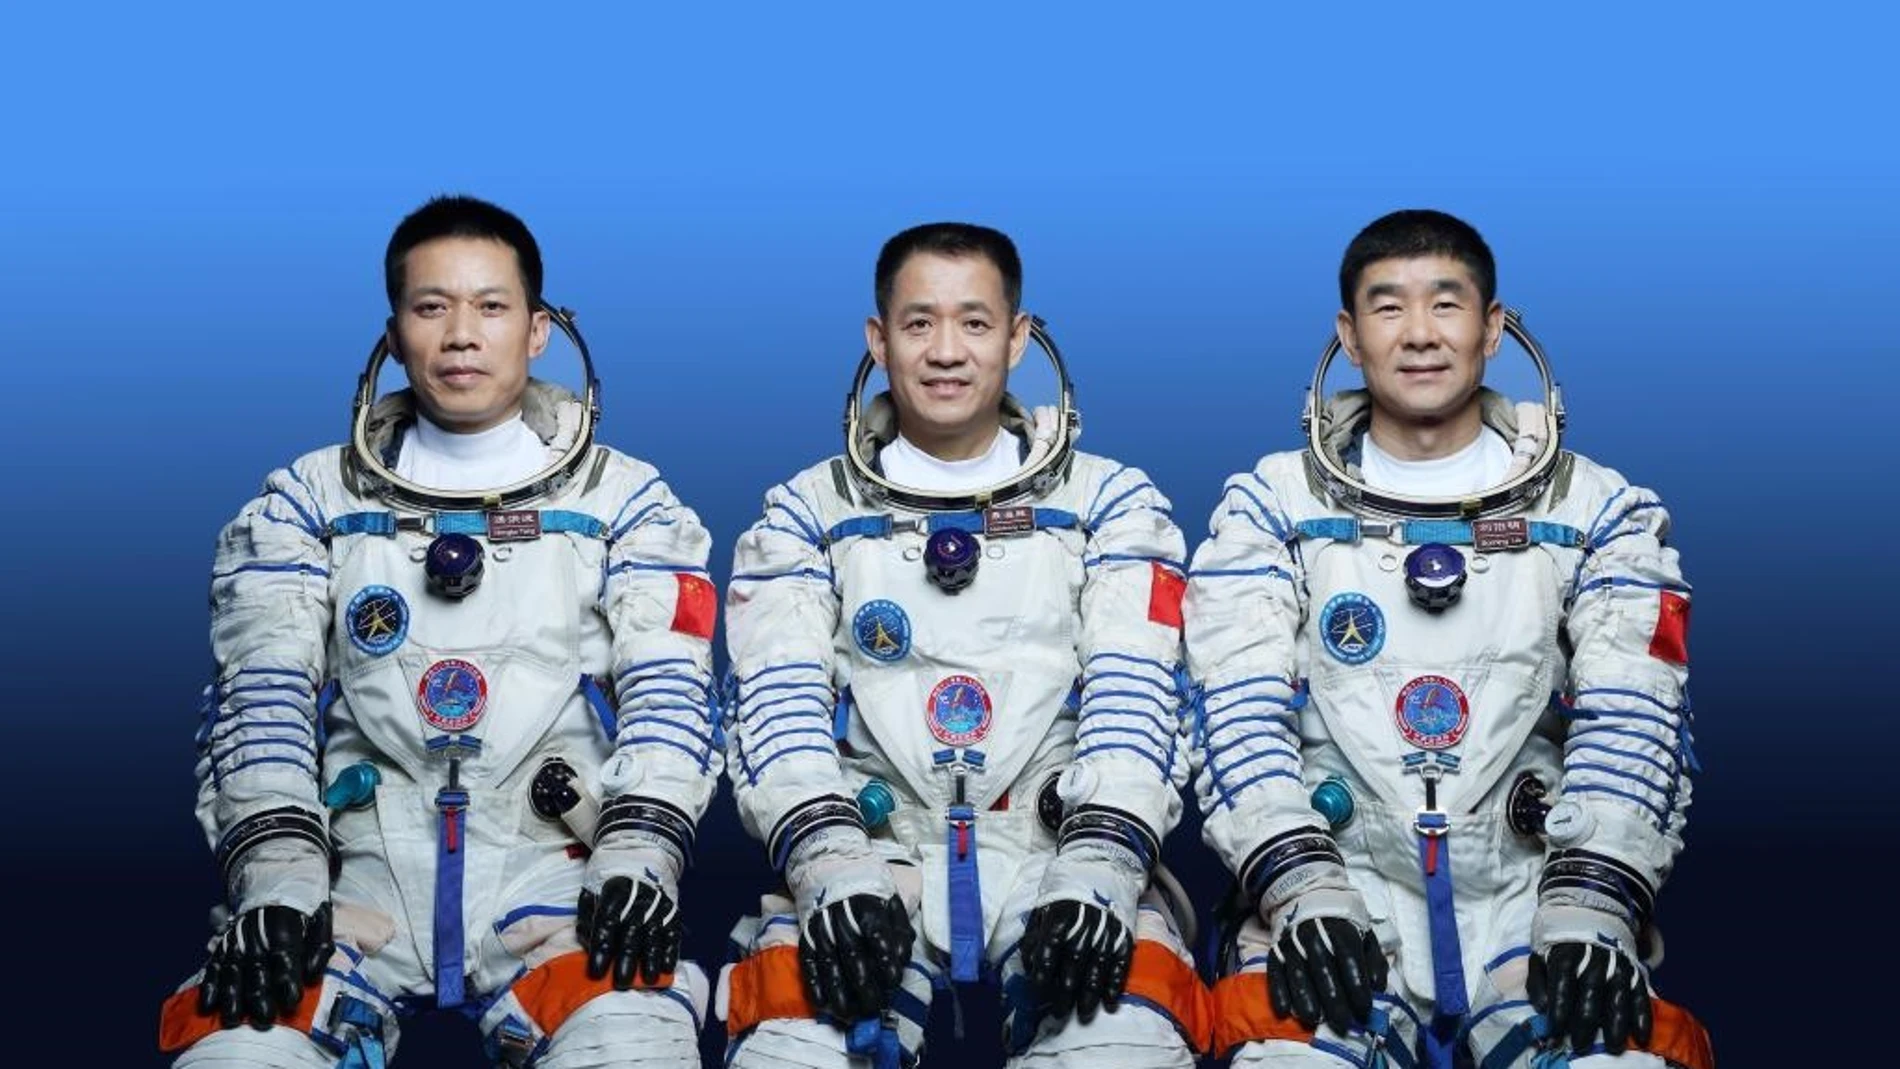 Esta foto sin fecha muestra a los astronautas chinos Nie Haisheng (C), Liu Boming (D) y Tang Hongbo, quienes llevarán a cabo la misión de vuelo espacial tripulado Shenzhou-12.XU BU/XINHUA16/06/2021 ONLY FOR USE IN SPAIN